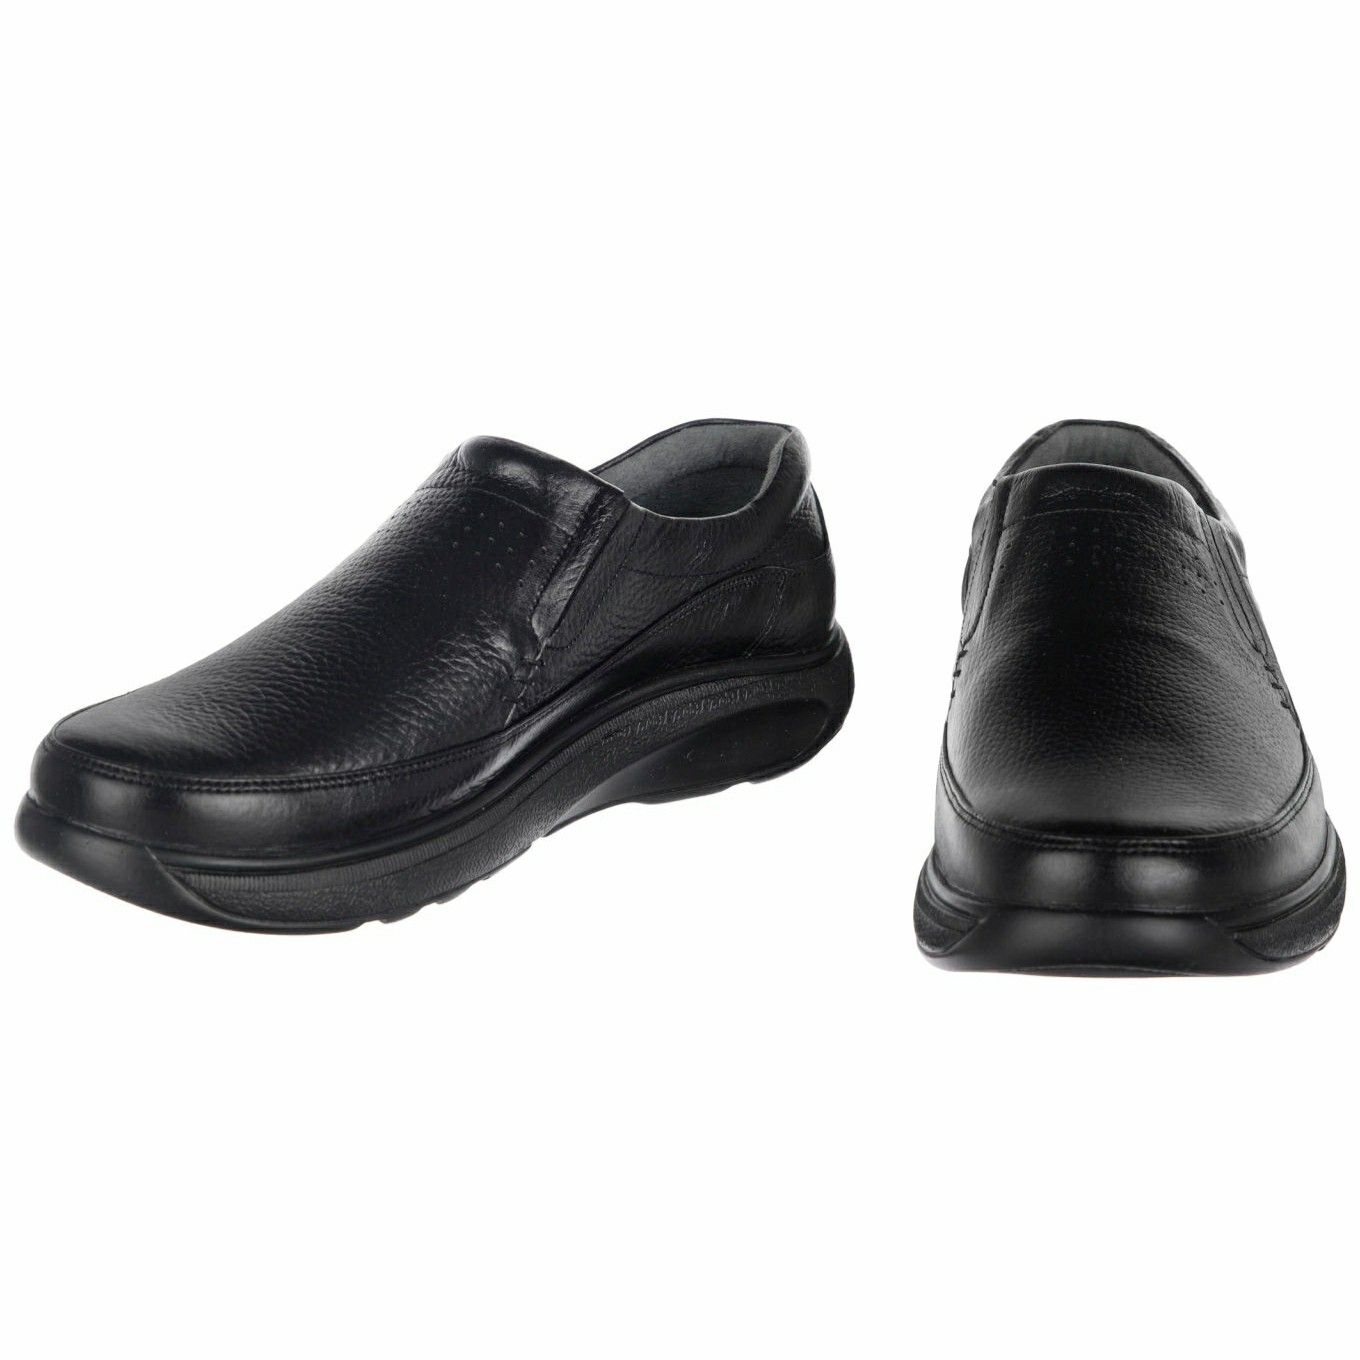 کفش روزمره مردانه دانادل مدل چرم طبیعی کد A503101 -  - 4